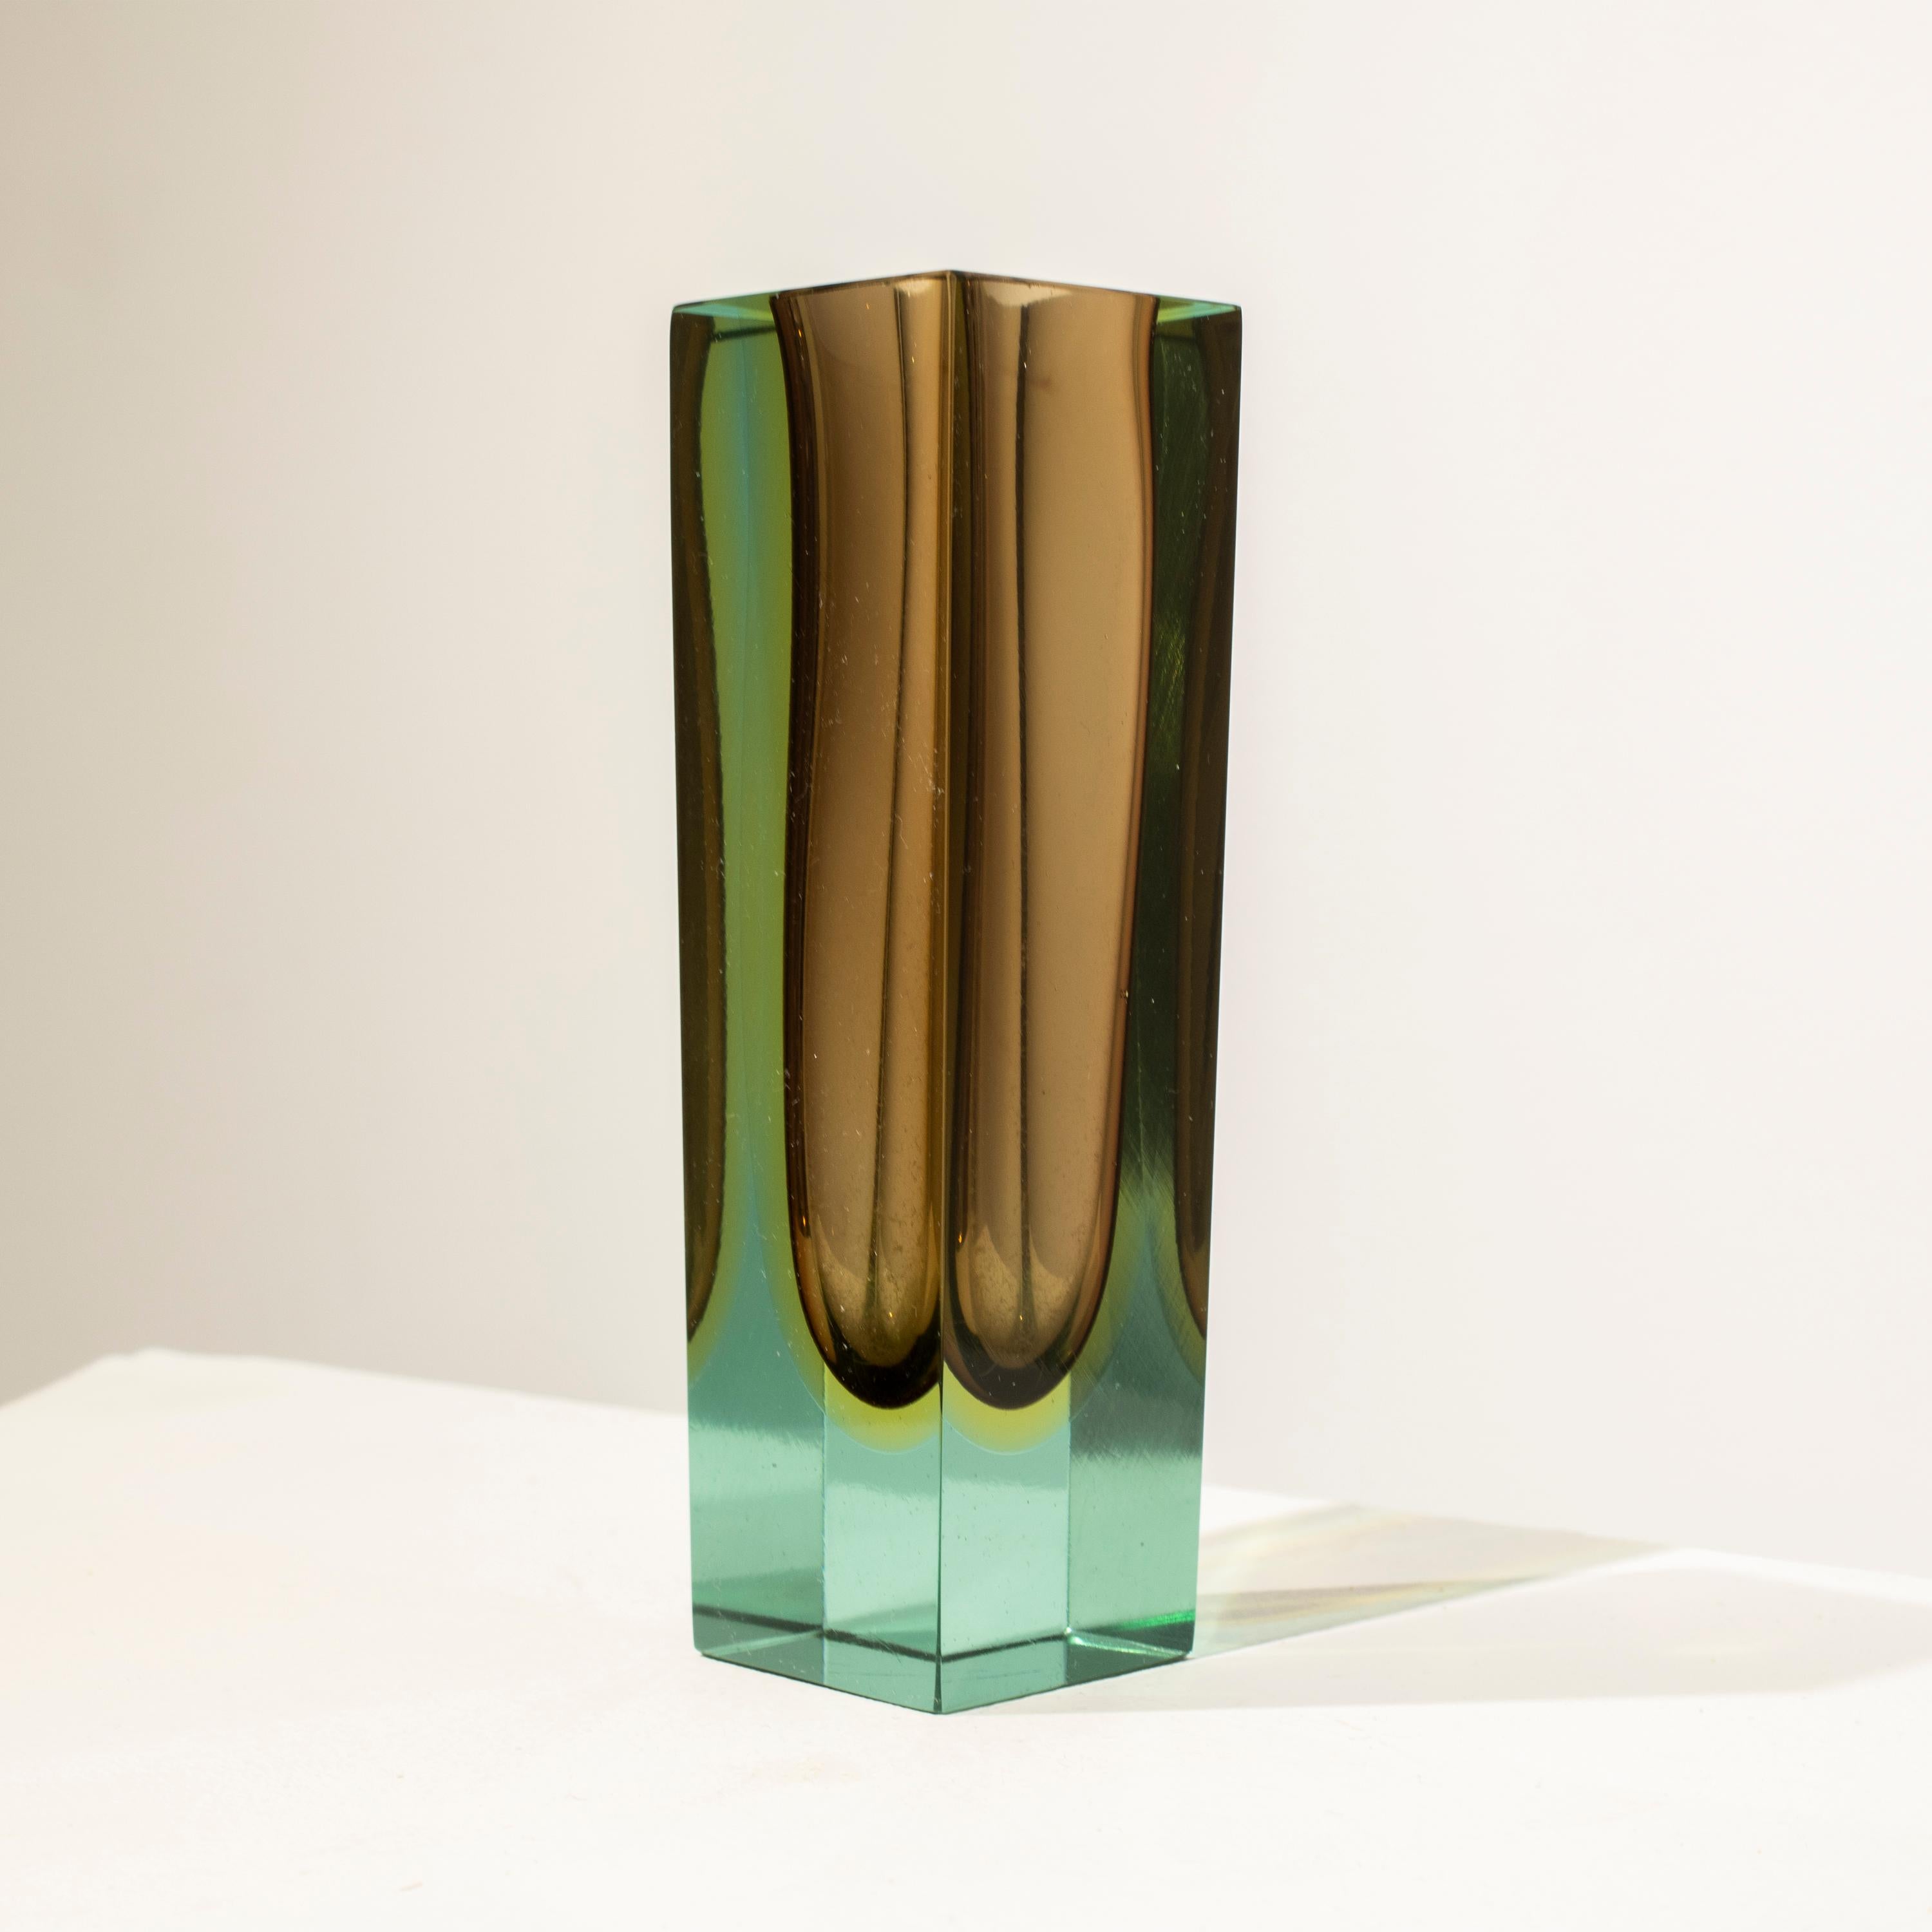 Kleine italienische Vase, entworfen von Flavio Poli in den 1970er Jahren. Die Vase ist handgefertigt aus Murano-Glas mit einer quadratischen Form, in verschiedenen Farben mit vorherrschendem Braun.